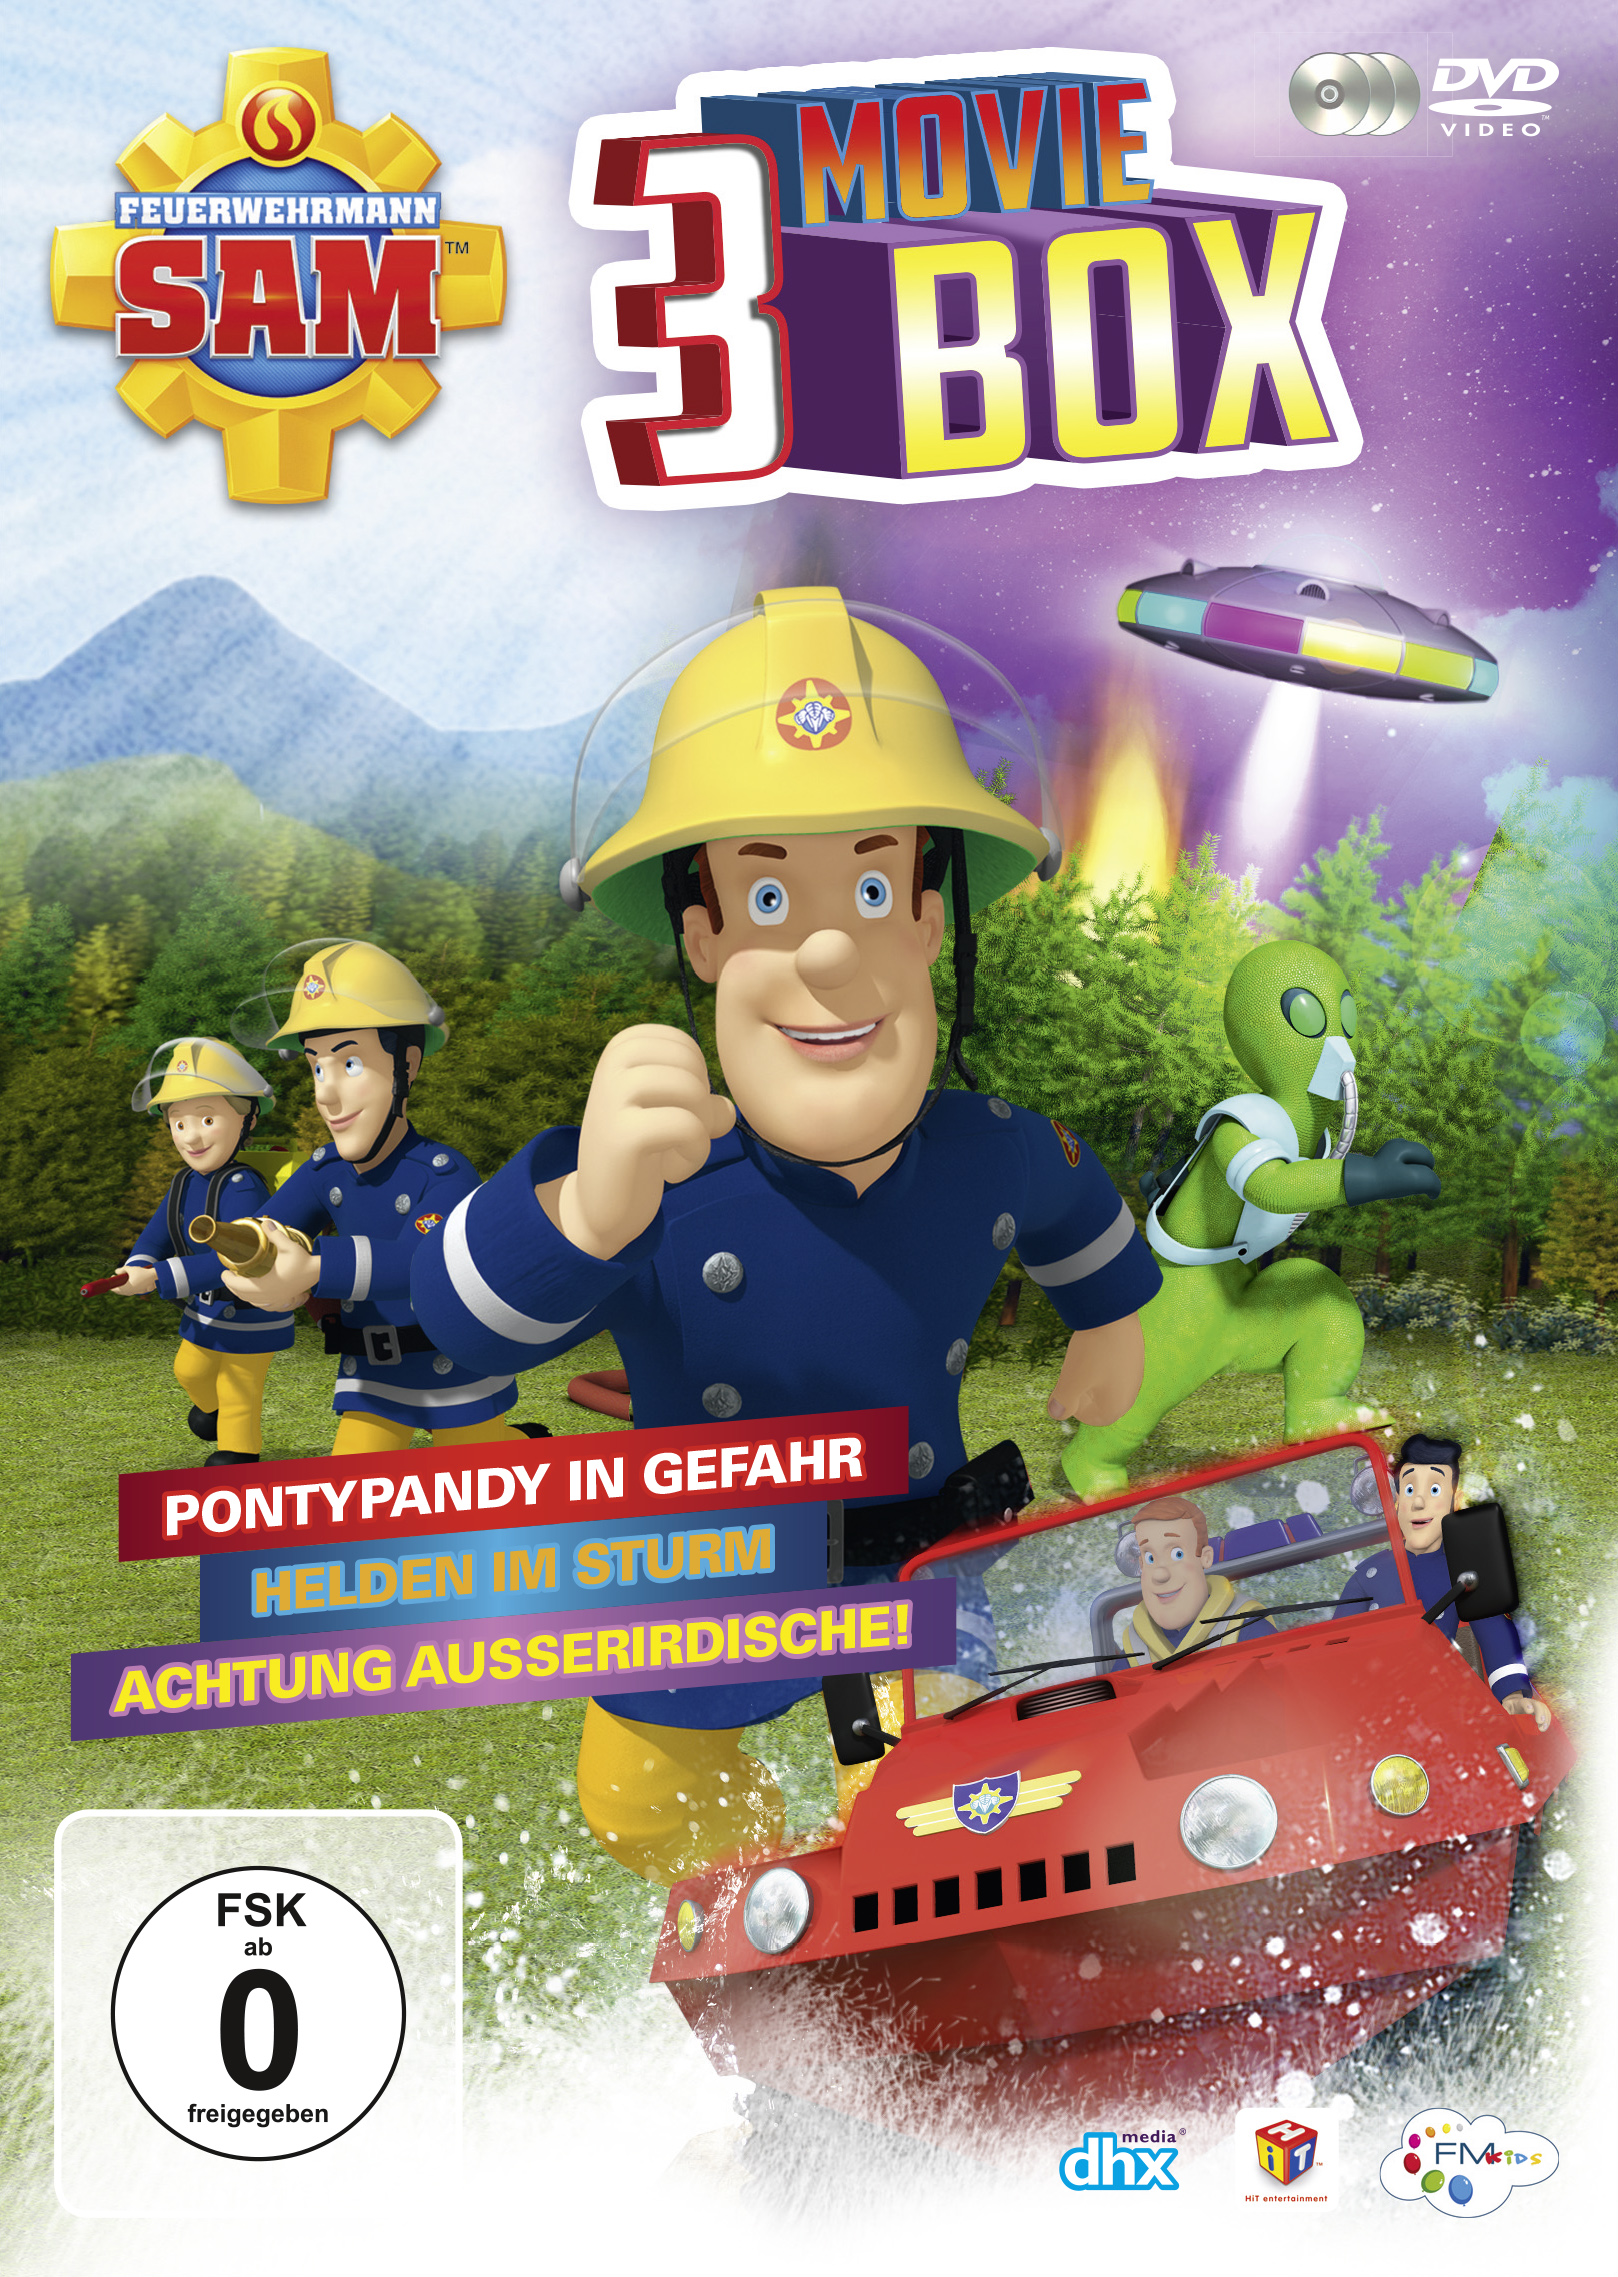 3 (Ltd.) Feuerwehrmann DVD Moviebox Sam